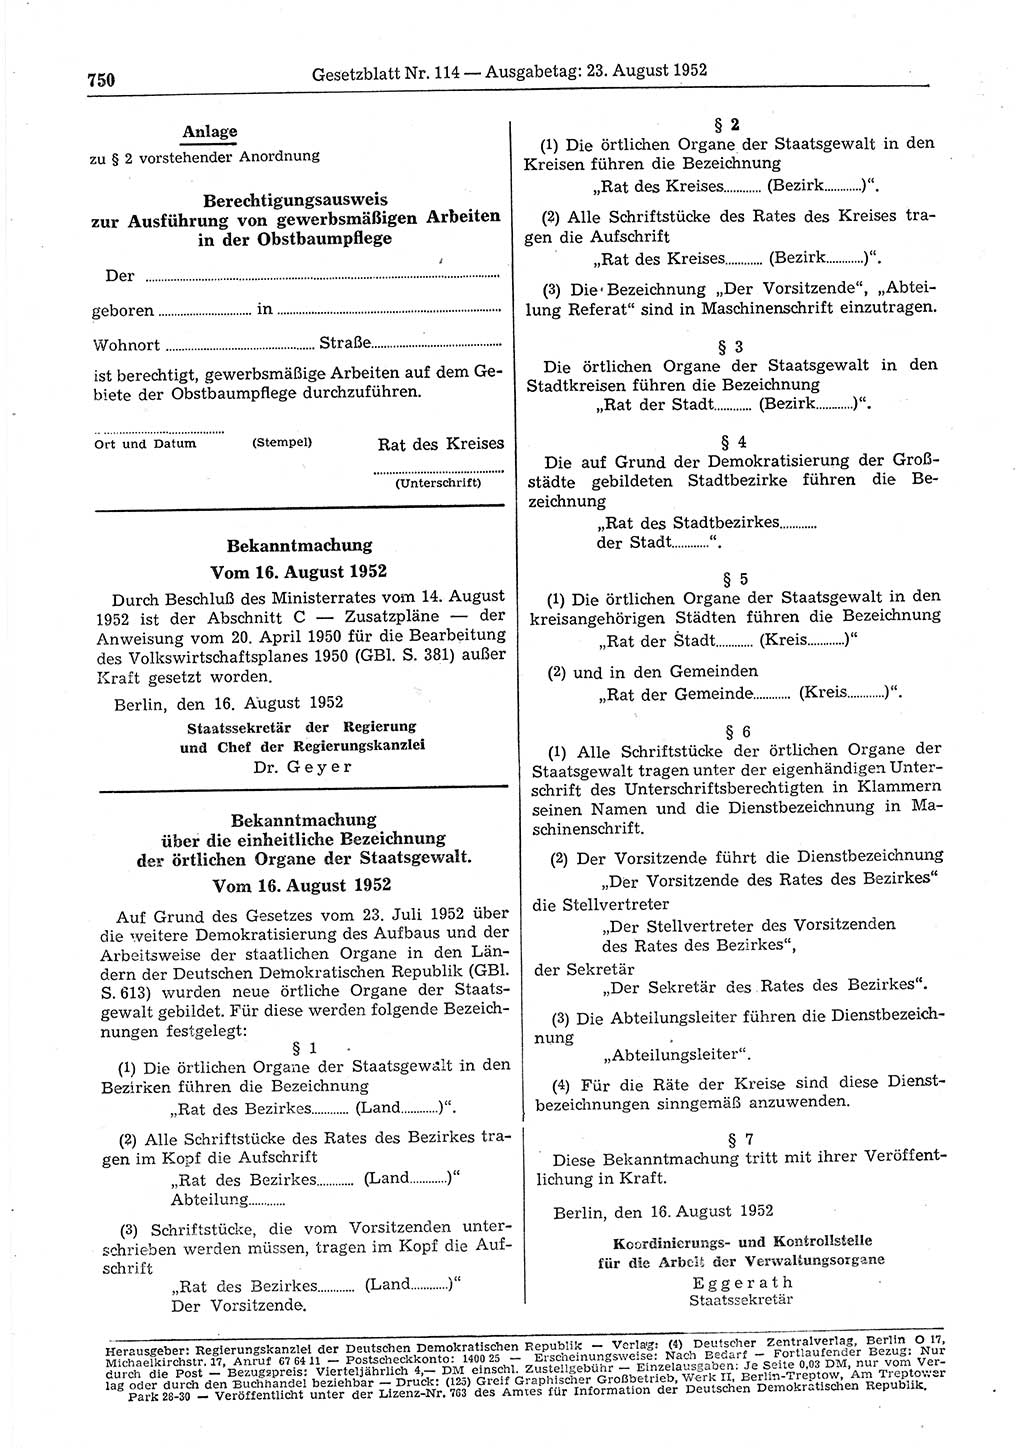 Gesetzblatt (GBl.) der Deutschen Demokratischen Republik (DDR) 1952, Seite 750 (GBl. DDR 1952, S. 750)